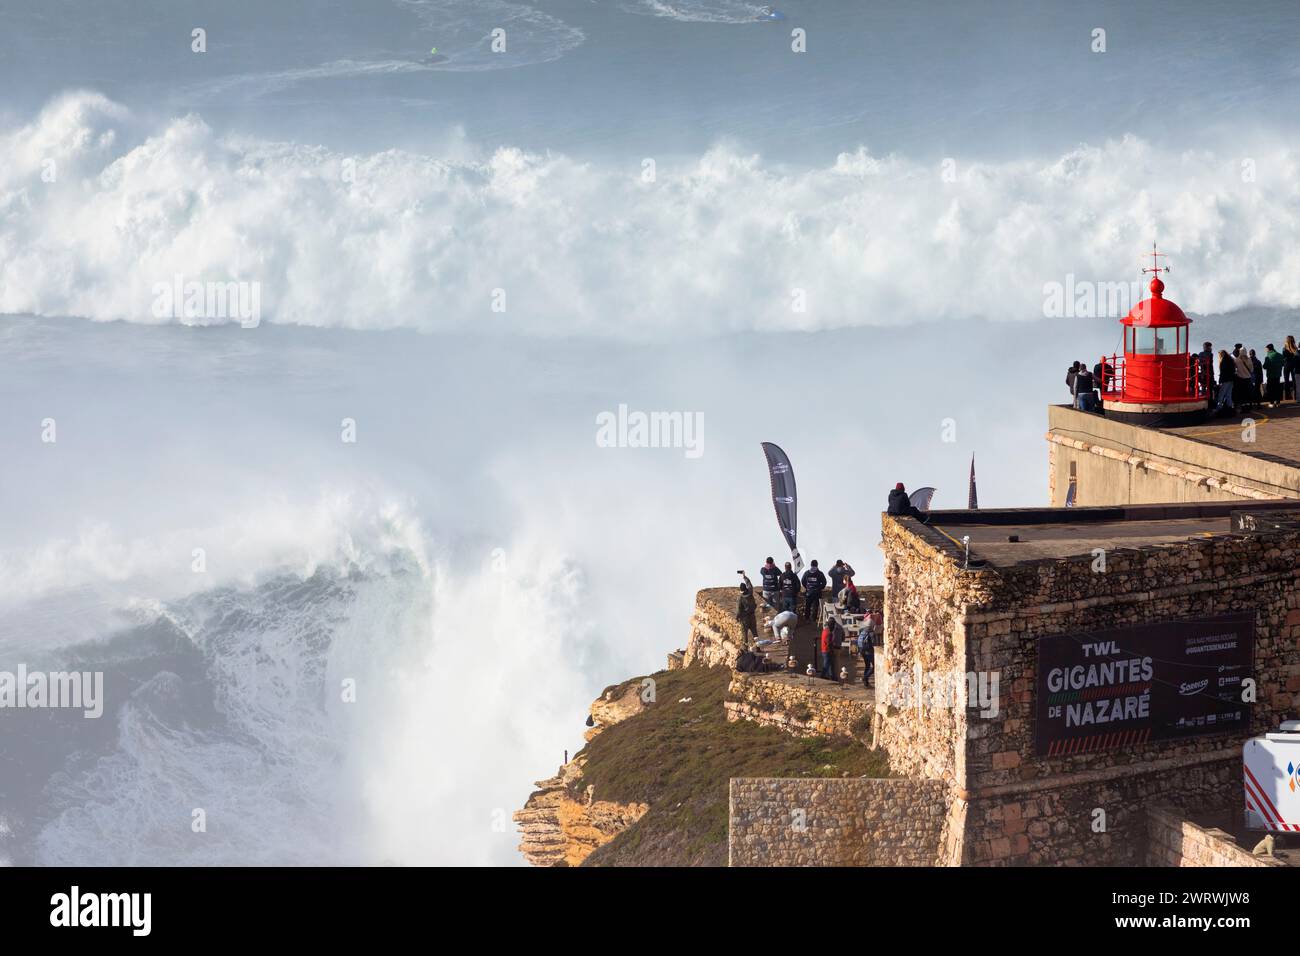 Europa, Portogallo, regione di Oeste, Nazaré, folla che guarda le enormi onde da Forte de Sao Miguel Arcanjo durante il Free Surfing Event 2022 Foto Stock